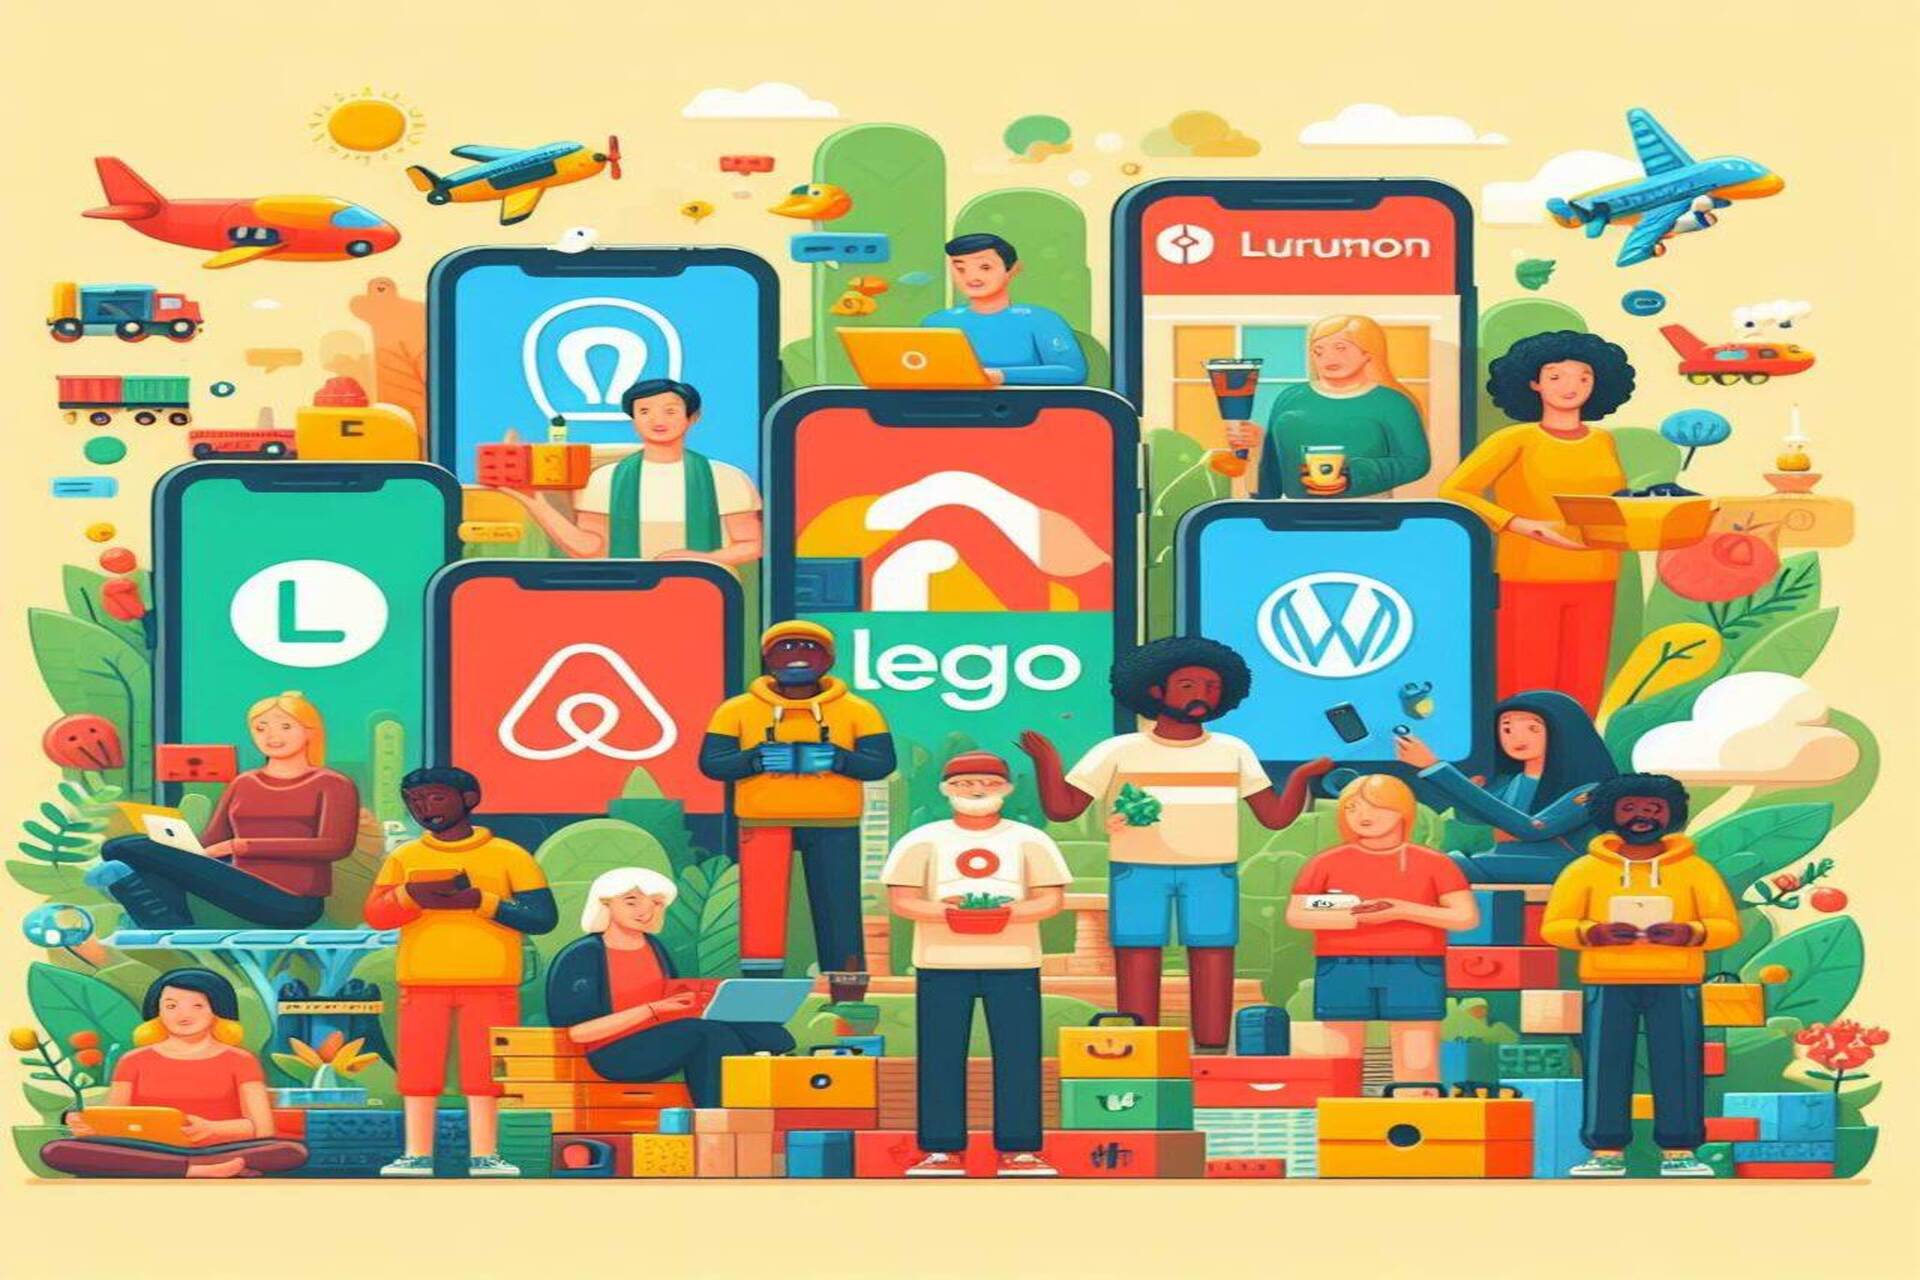 커뮤니티 및 군중: Airbnb, Etsy, GitHub, Stack Overflow, Lego Ideas, WordPress, Linux 및 Lululemon은 "커뮤니티" 앱의 완벽한 예입니다.